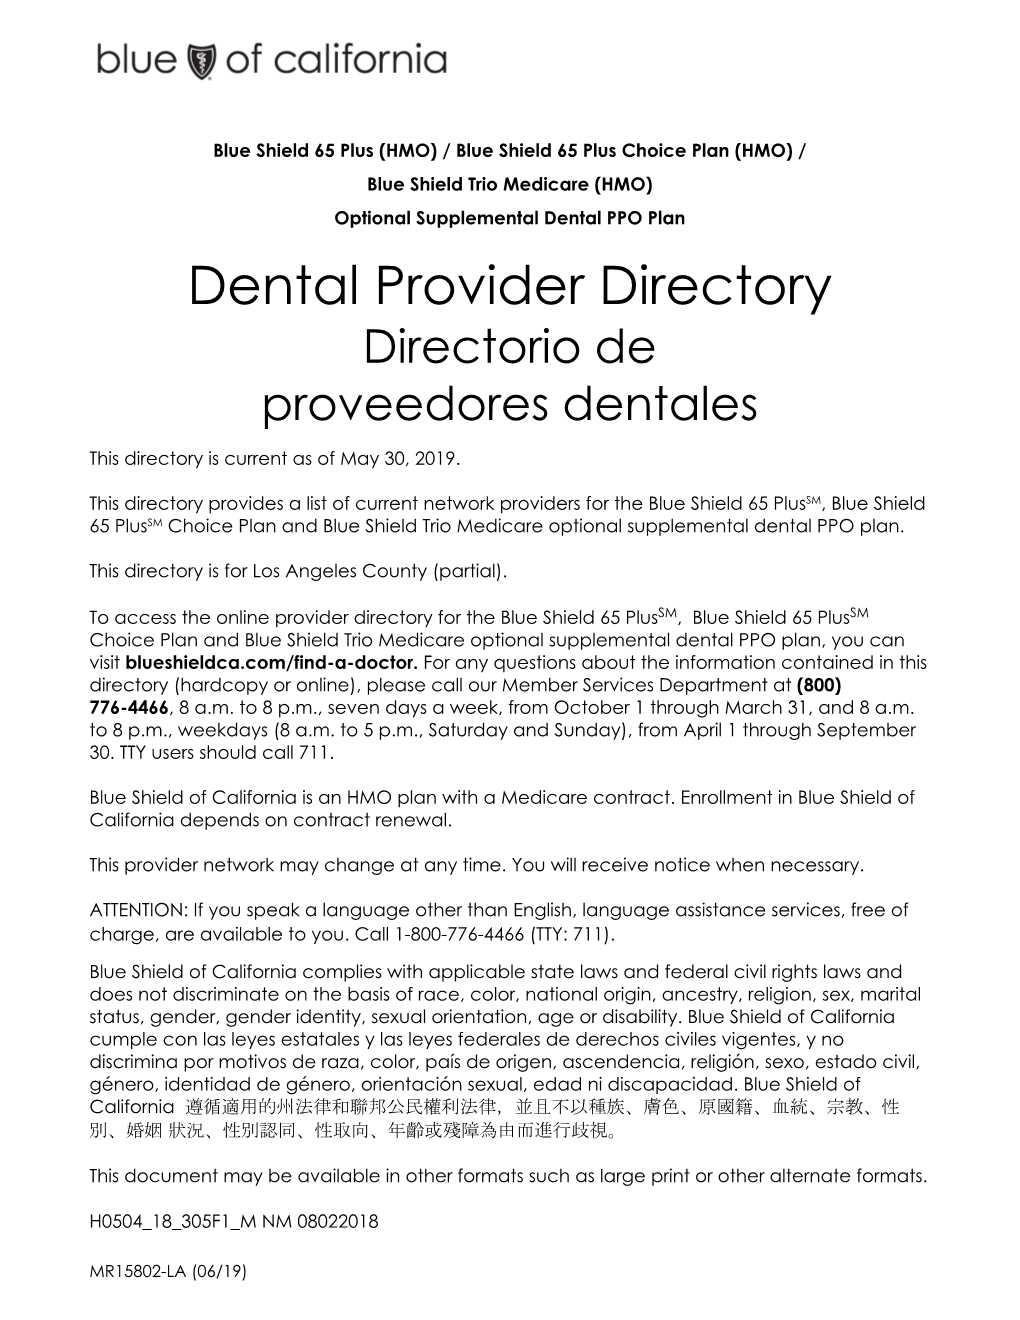 Dental Provider Directory Directorio De Proveedores Dentales